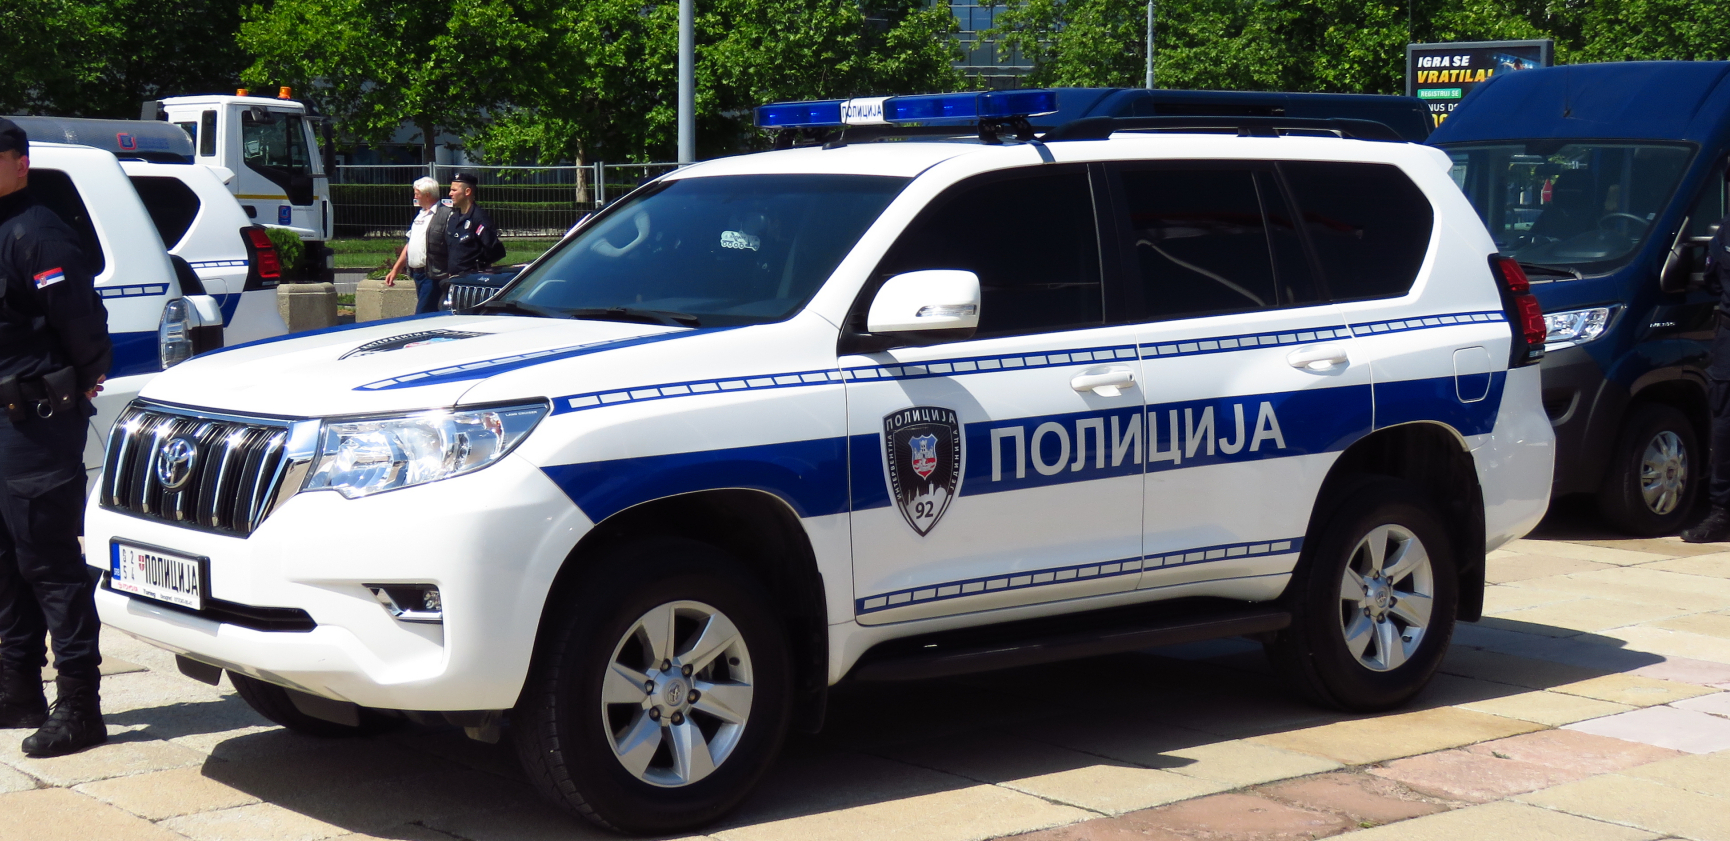 UDARIO MLADIĆA FLAŠOM U GLAVU, PA GA TROJICA TUKLI Policija u Leskovcu uhapsila trojicu osumnjičenih batinaša